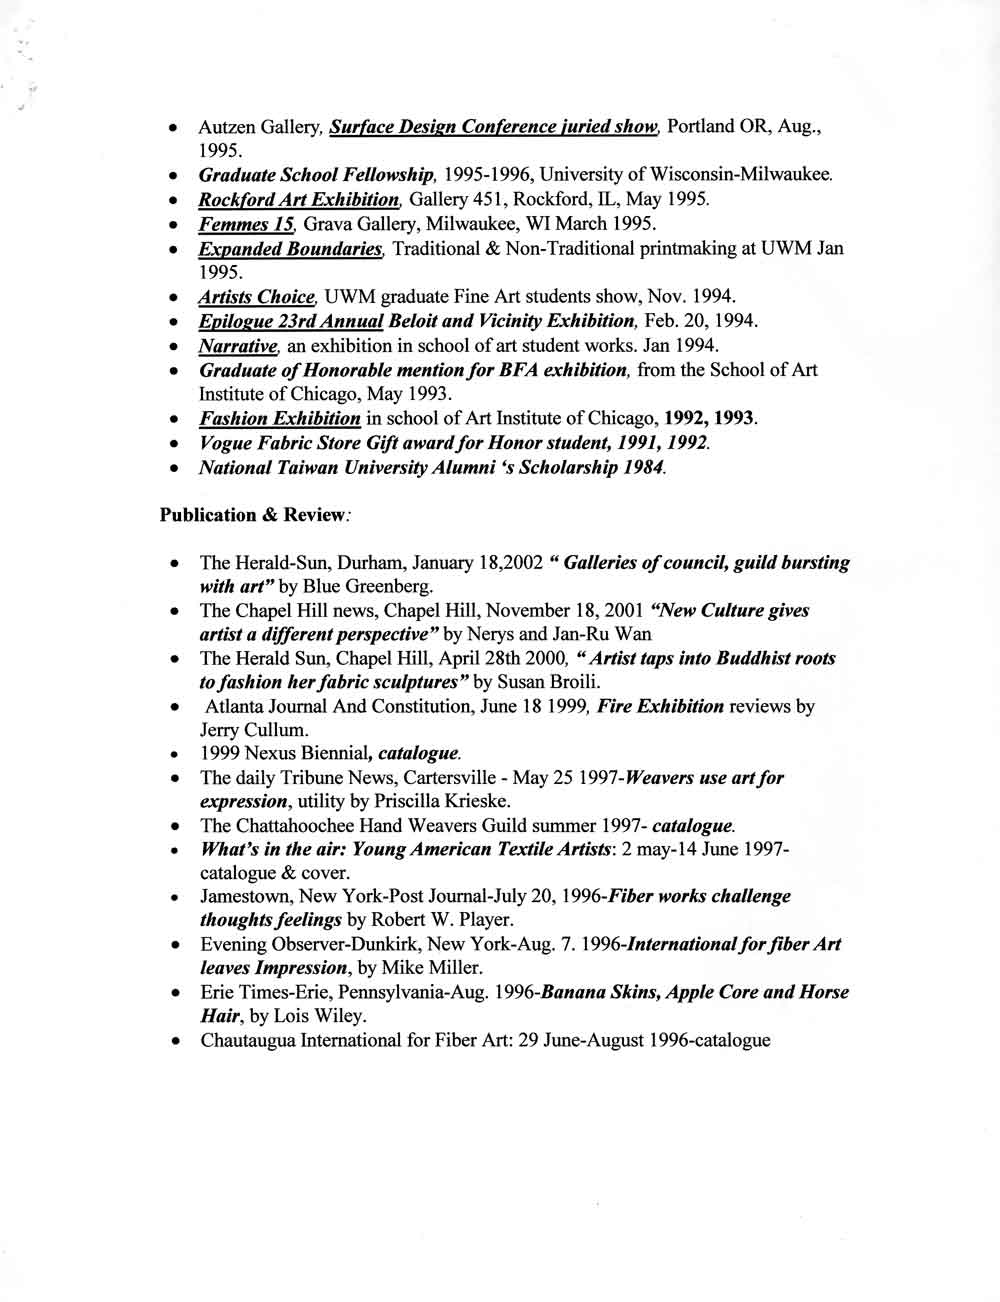 Jan-Ru Wan's Resume, pg 3